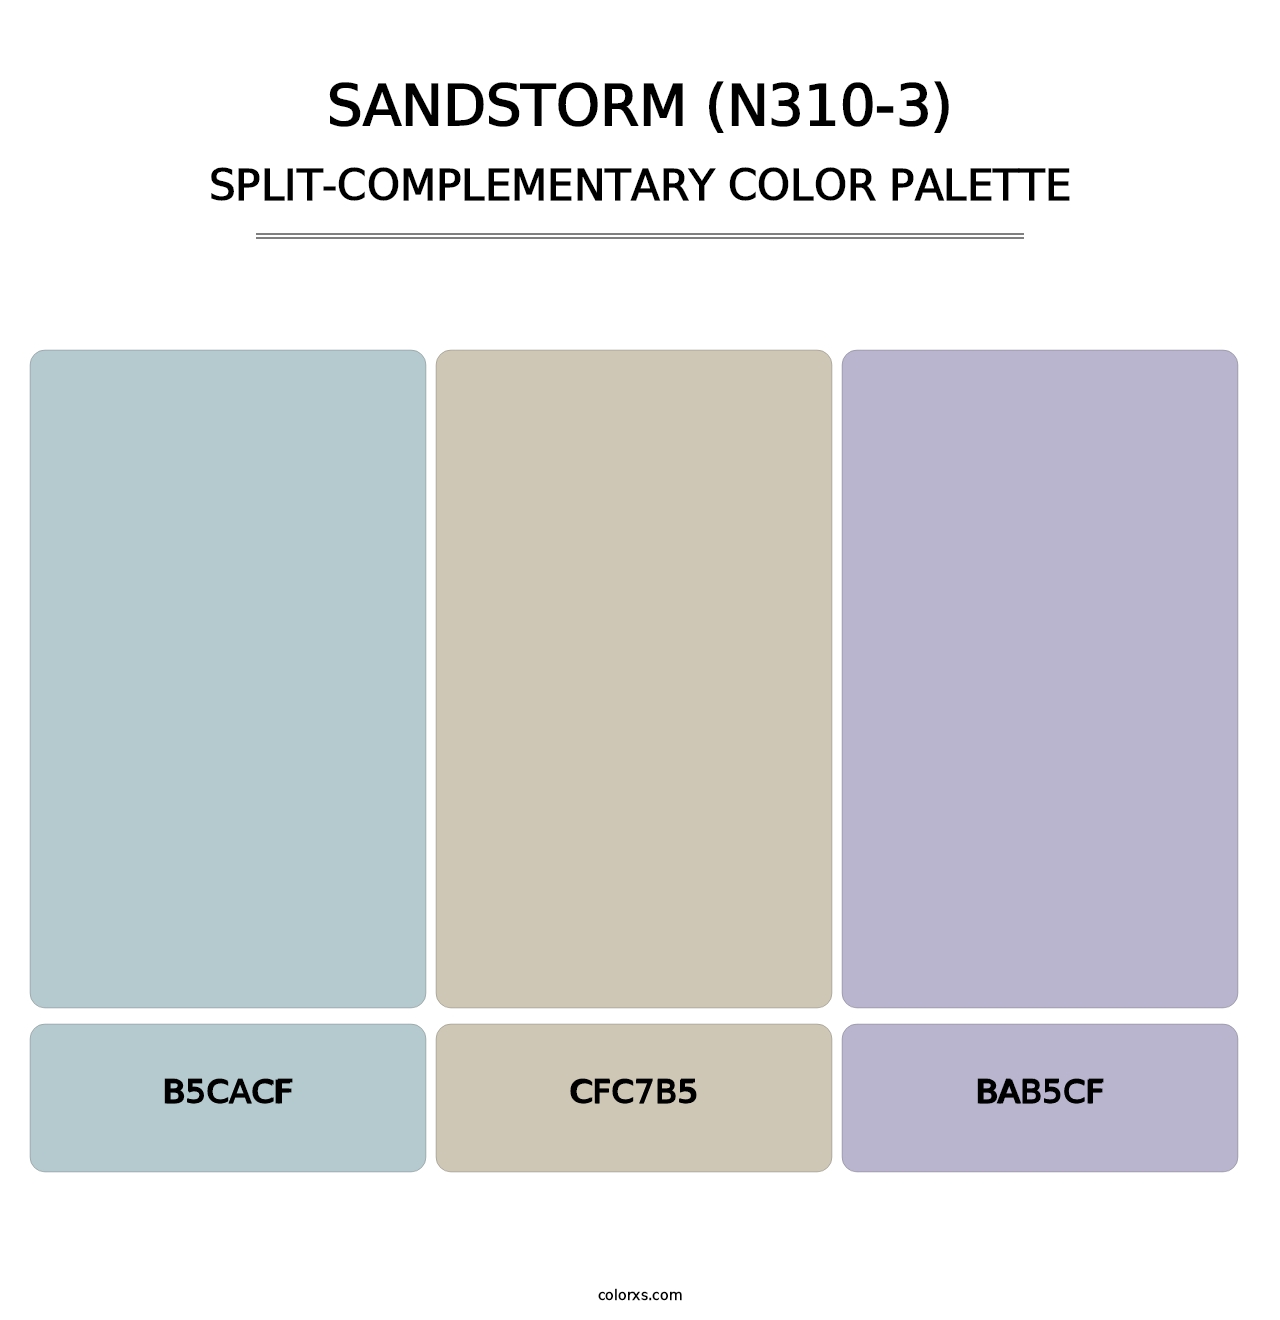 Sandstorm (N310-3) - Split-Complementary Color Palette